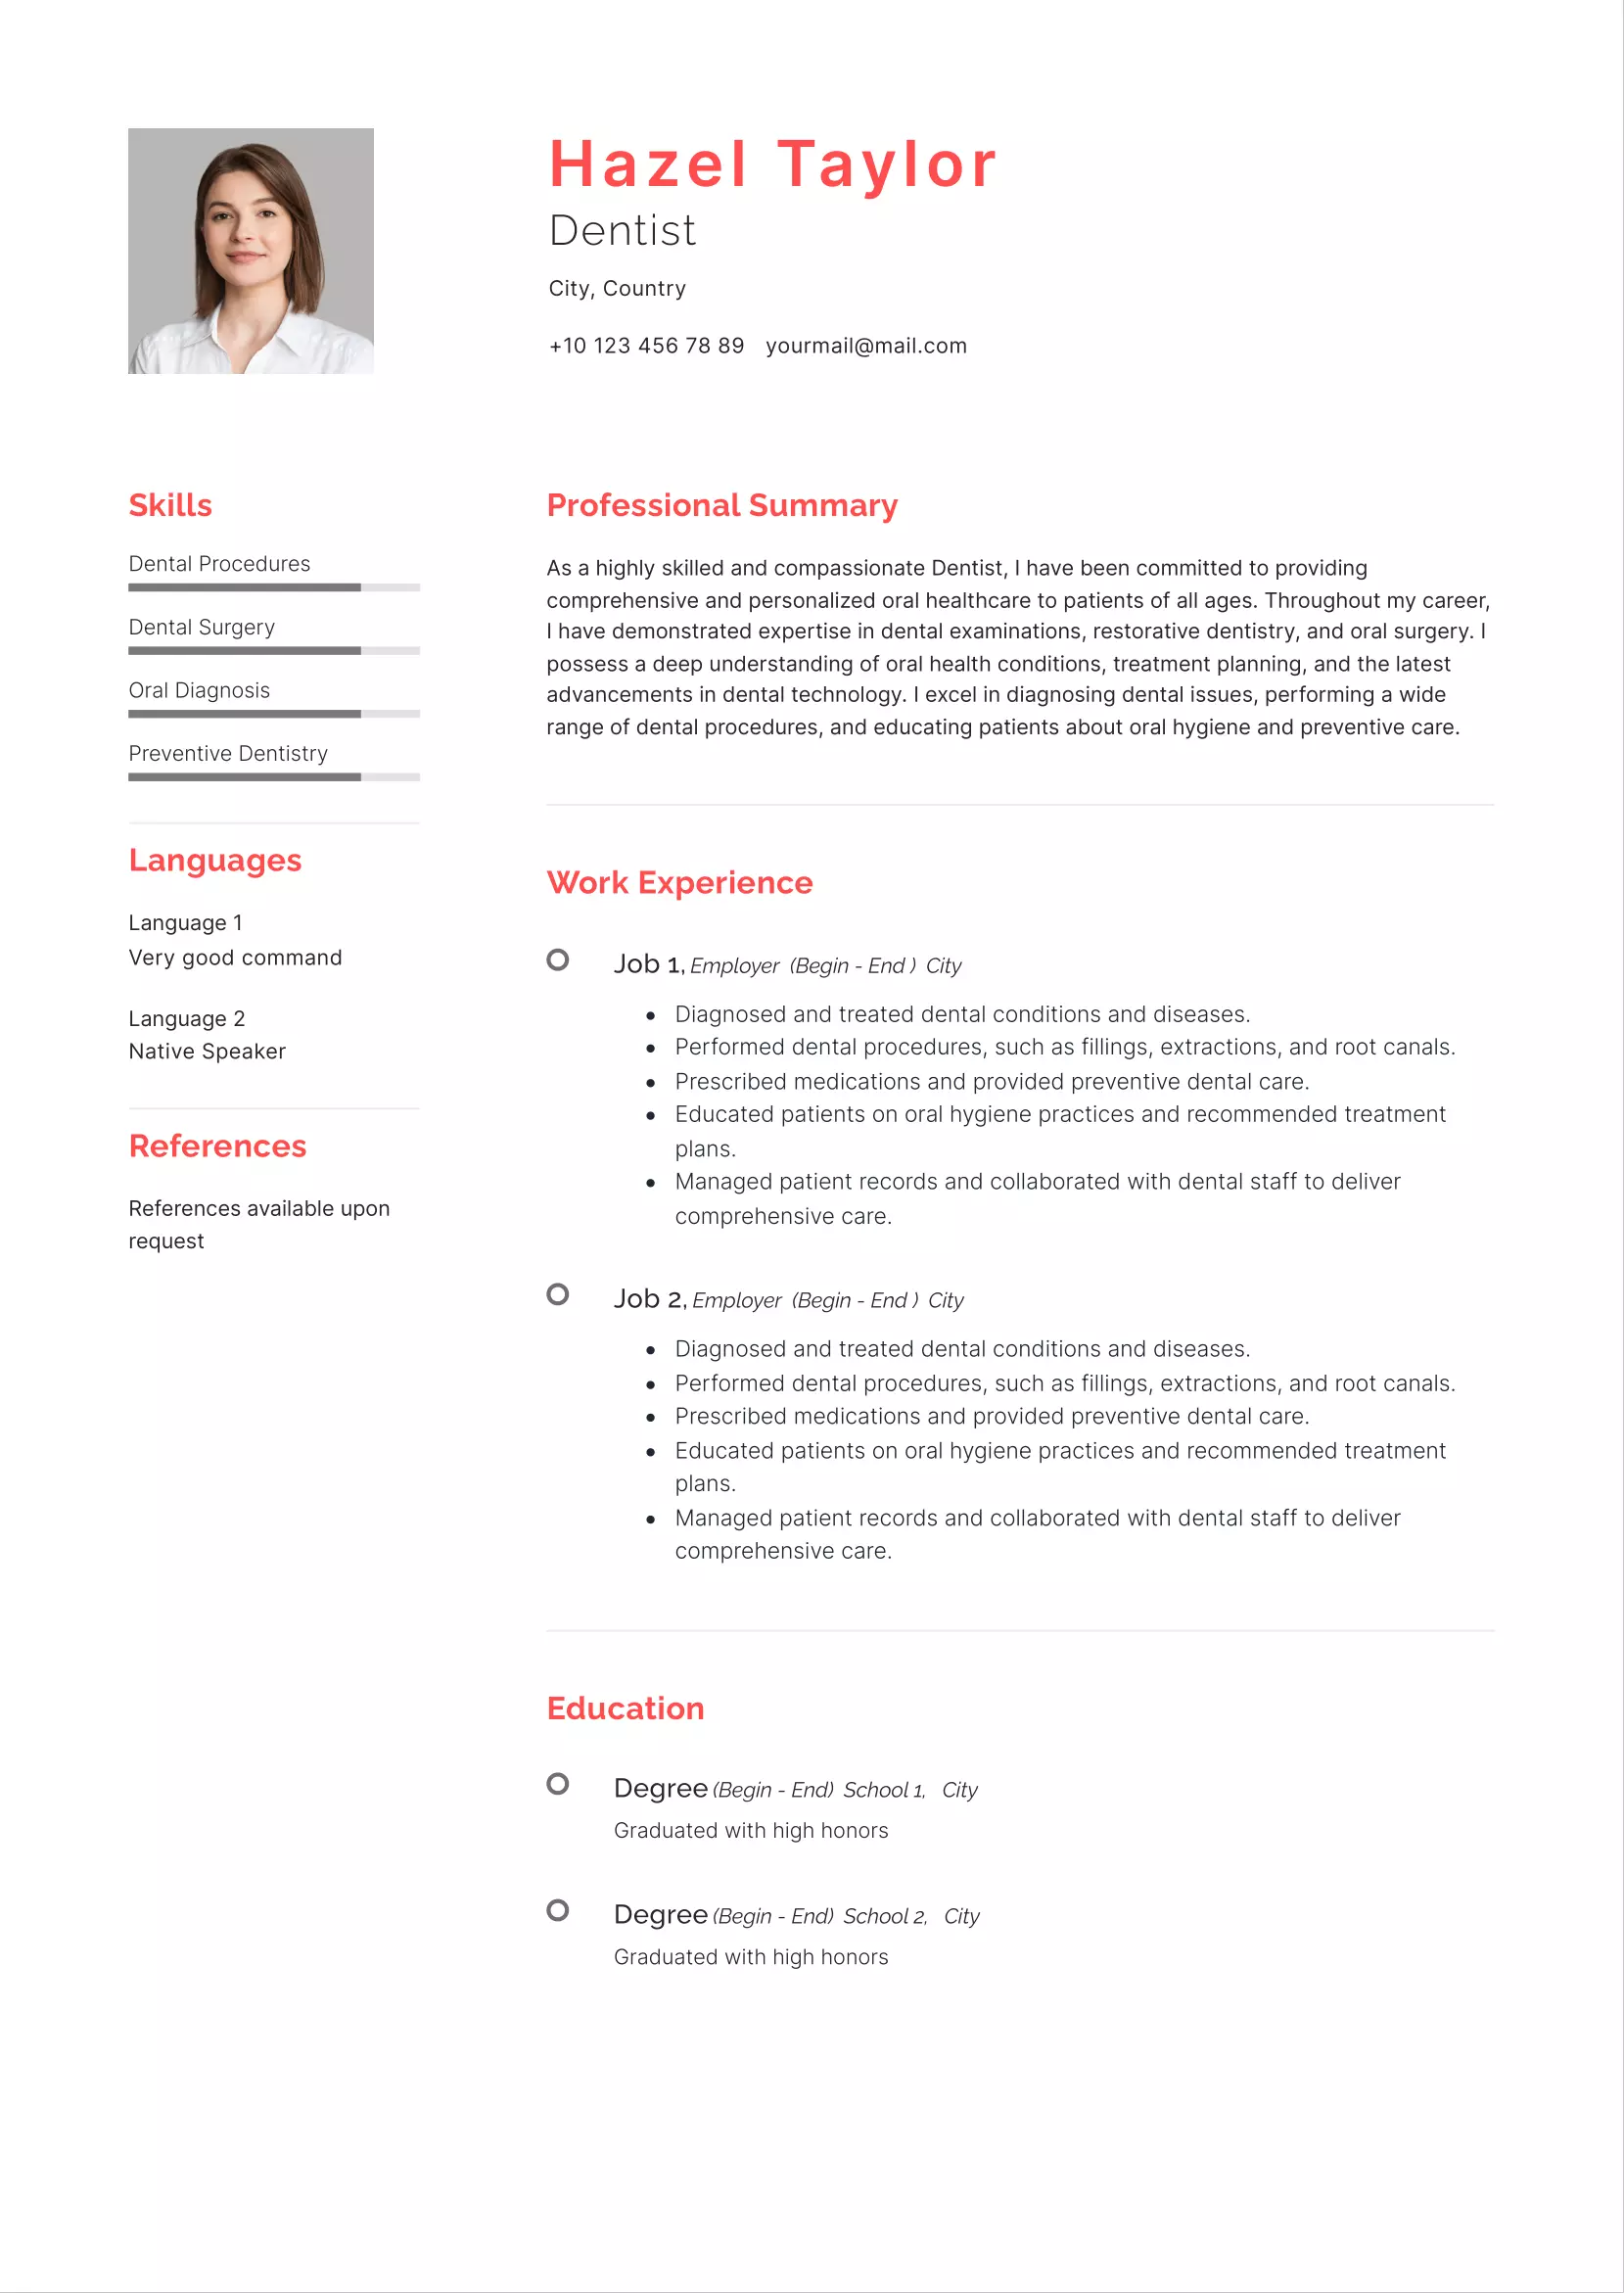 Dentist resume CV examples